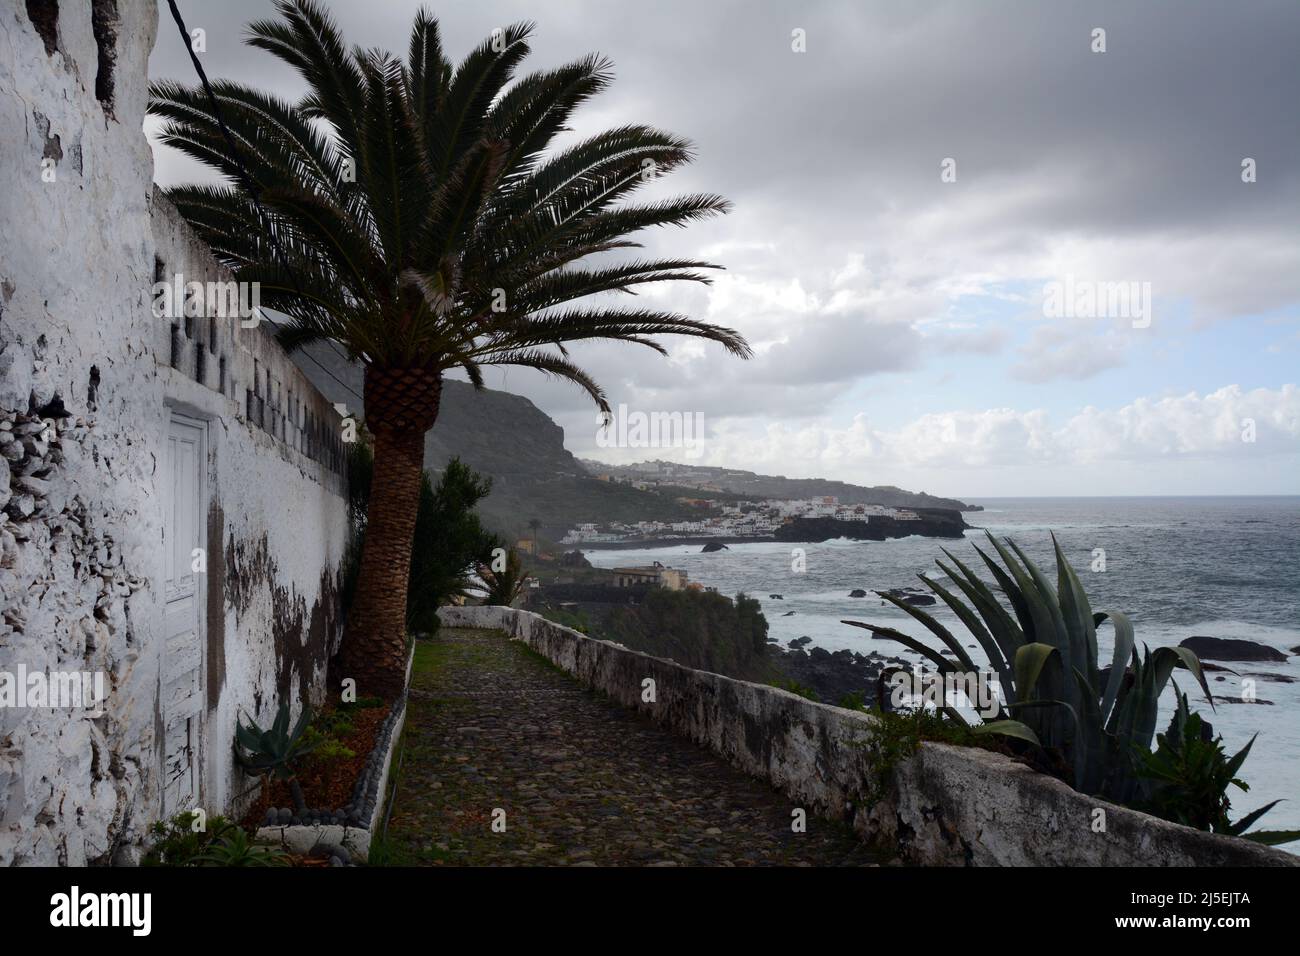 Maisons blanchies à la chaux dans la région de Las Aguas, dans la ville de San Juan de la Rambla, sur la côte atlantique nord de Ténérife, îles Canaries, Espagne. Banque D'Images